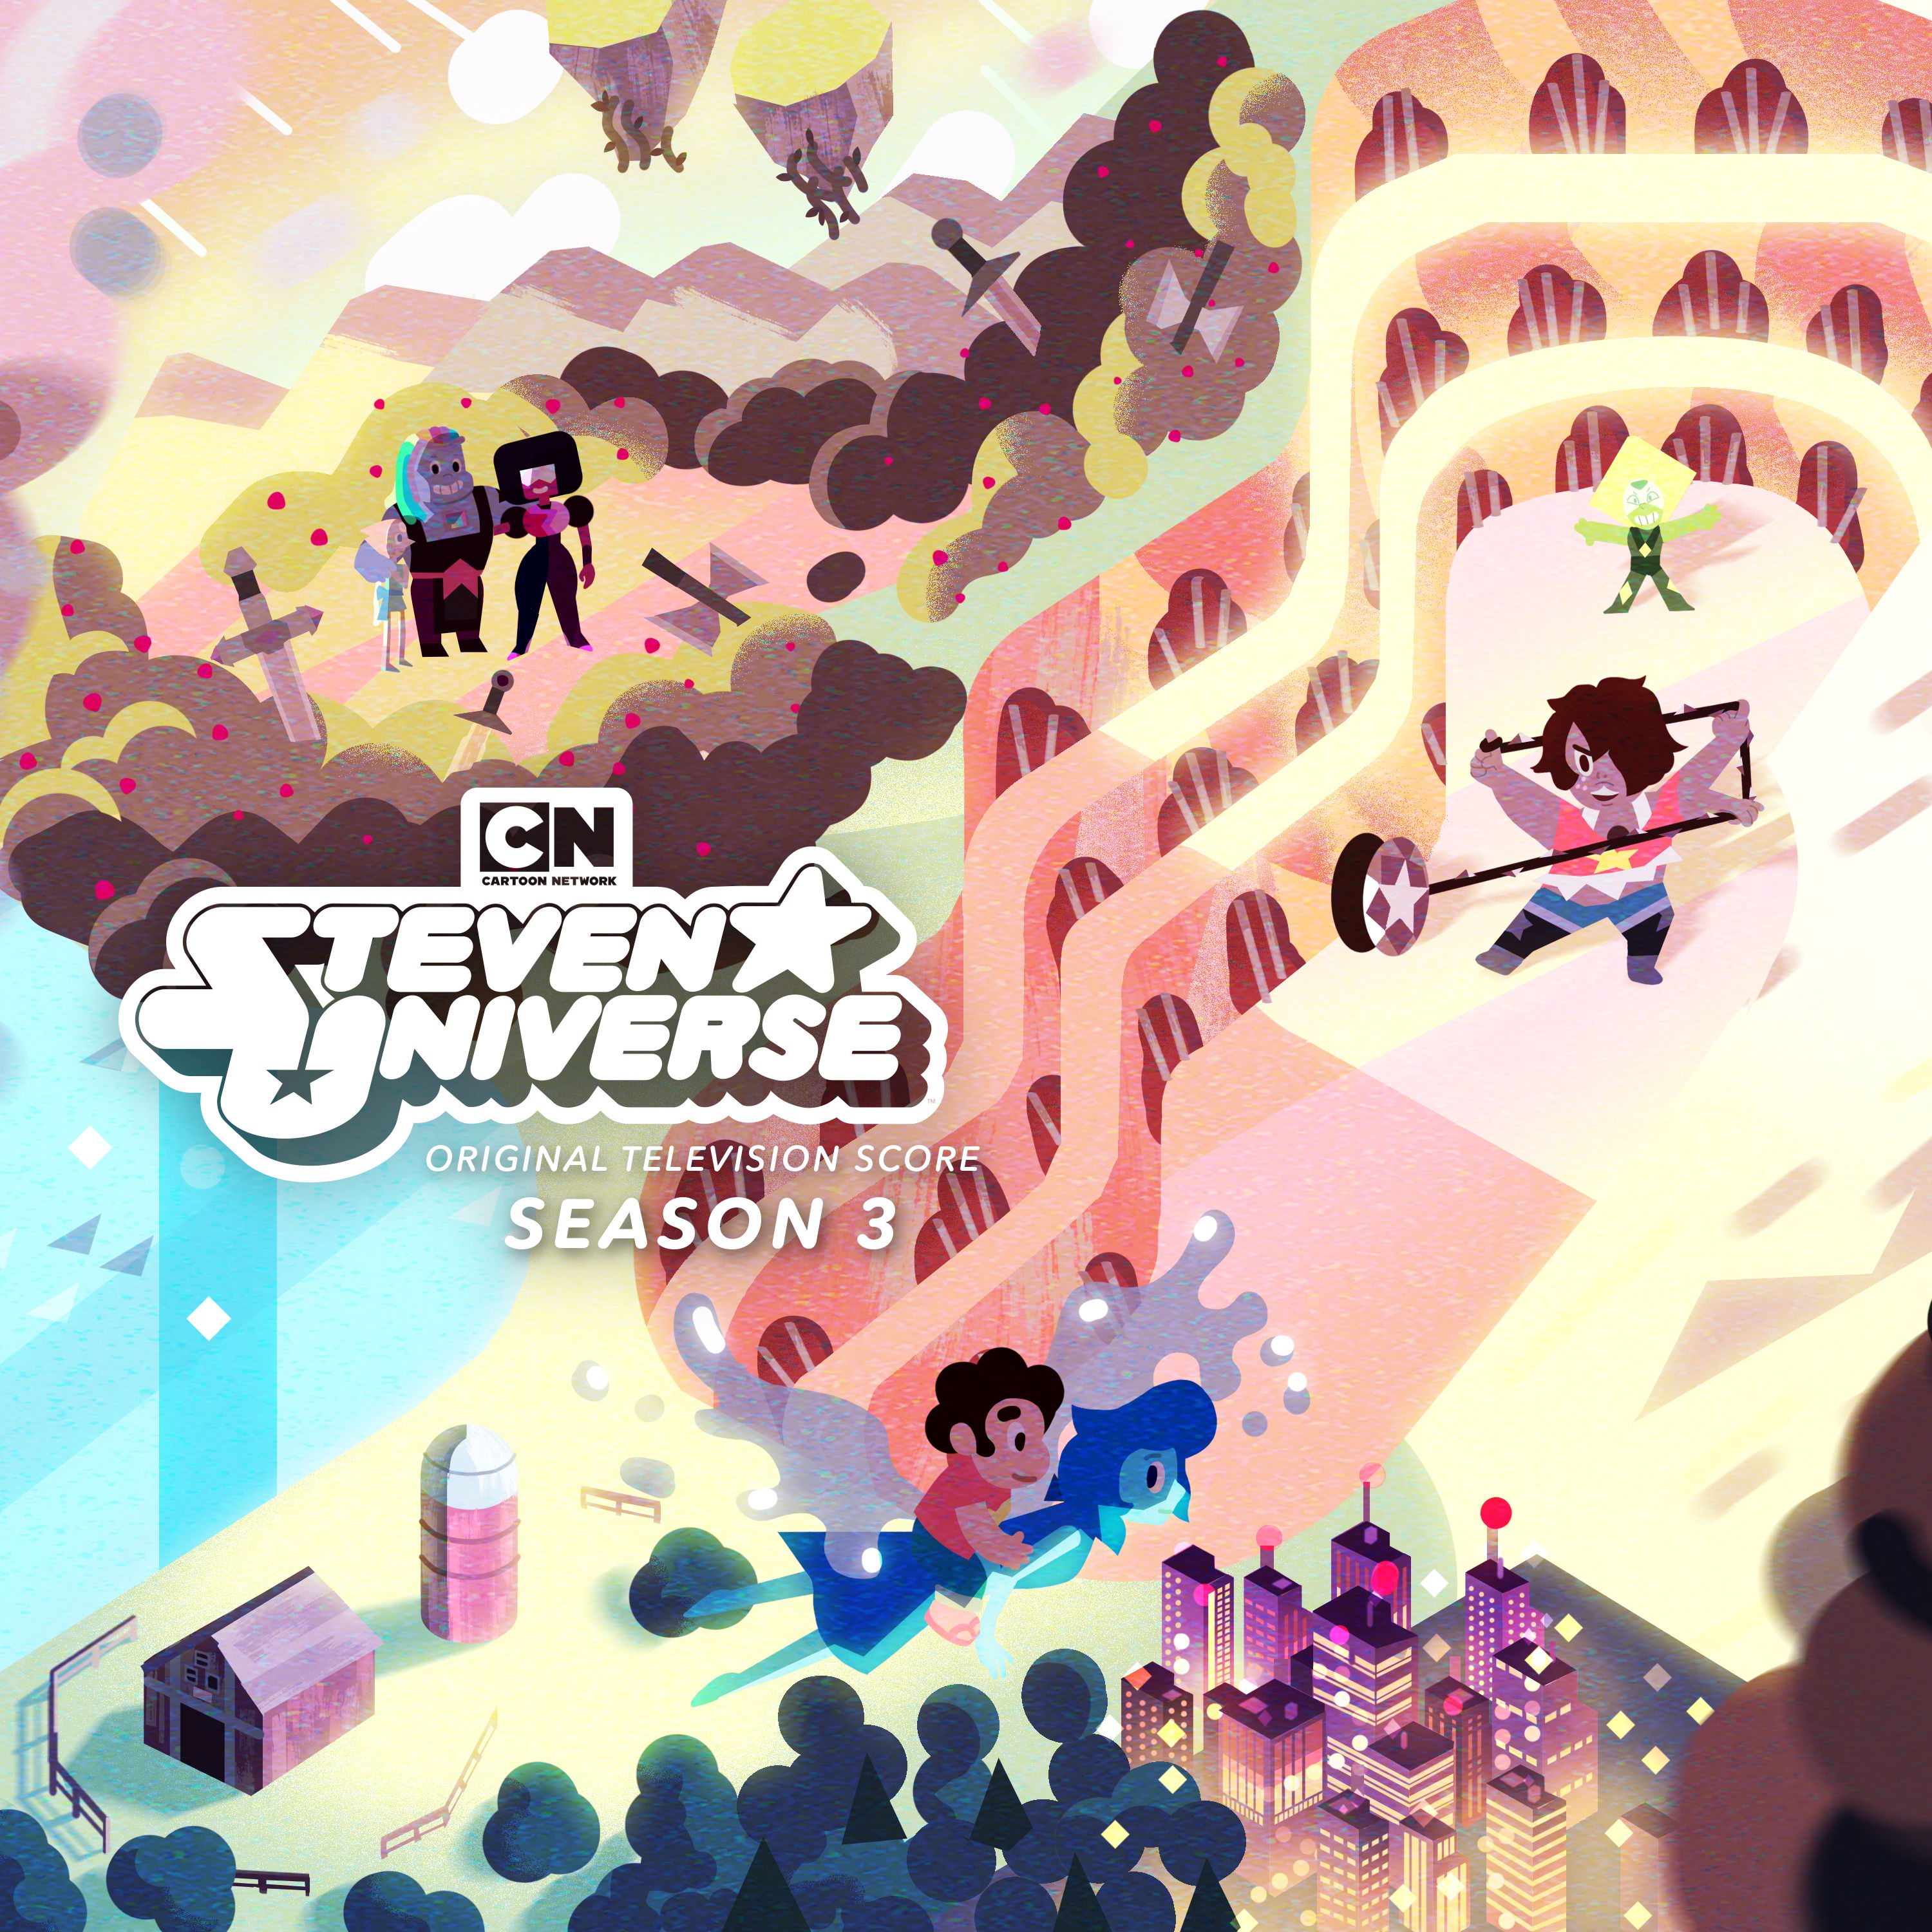 steven universe season 1 5 dvd